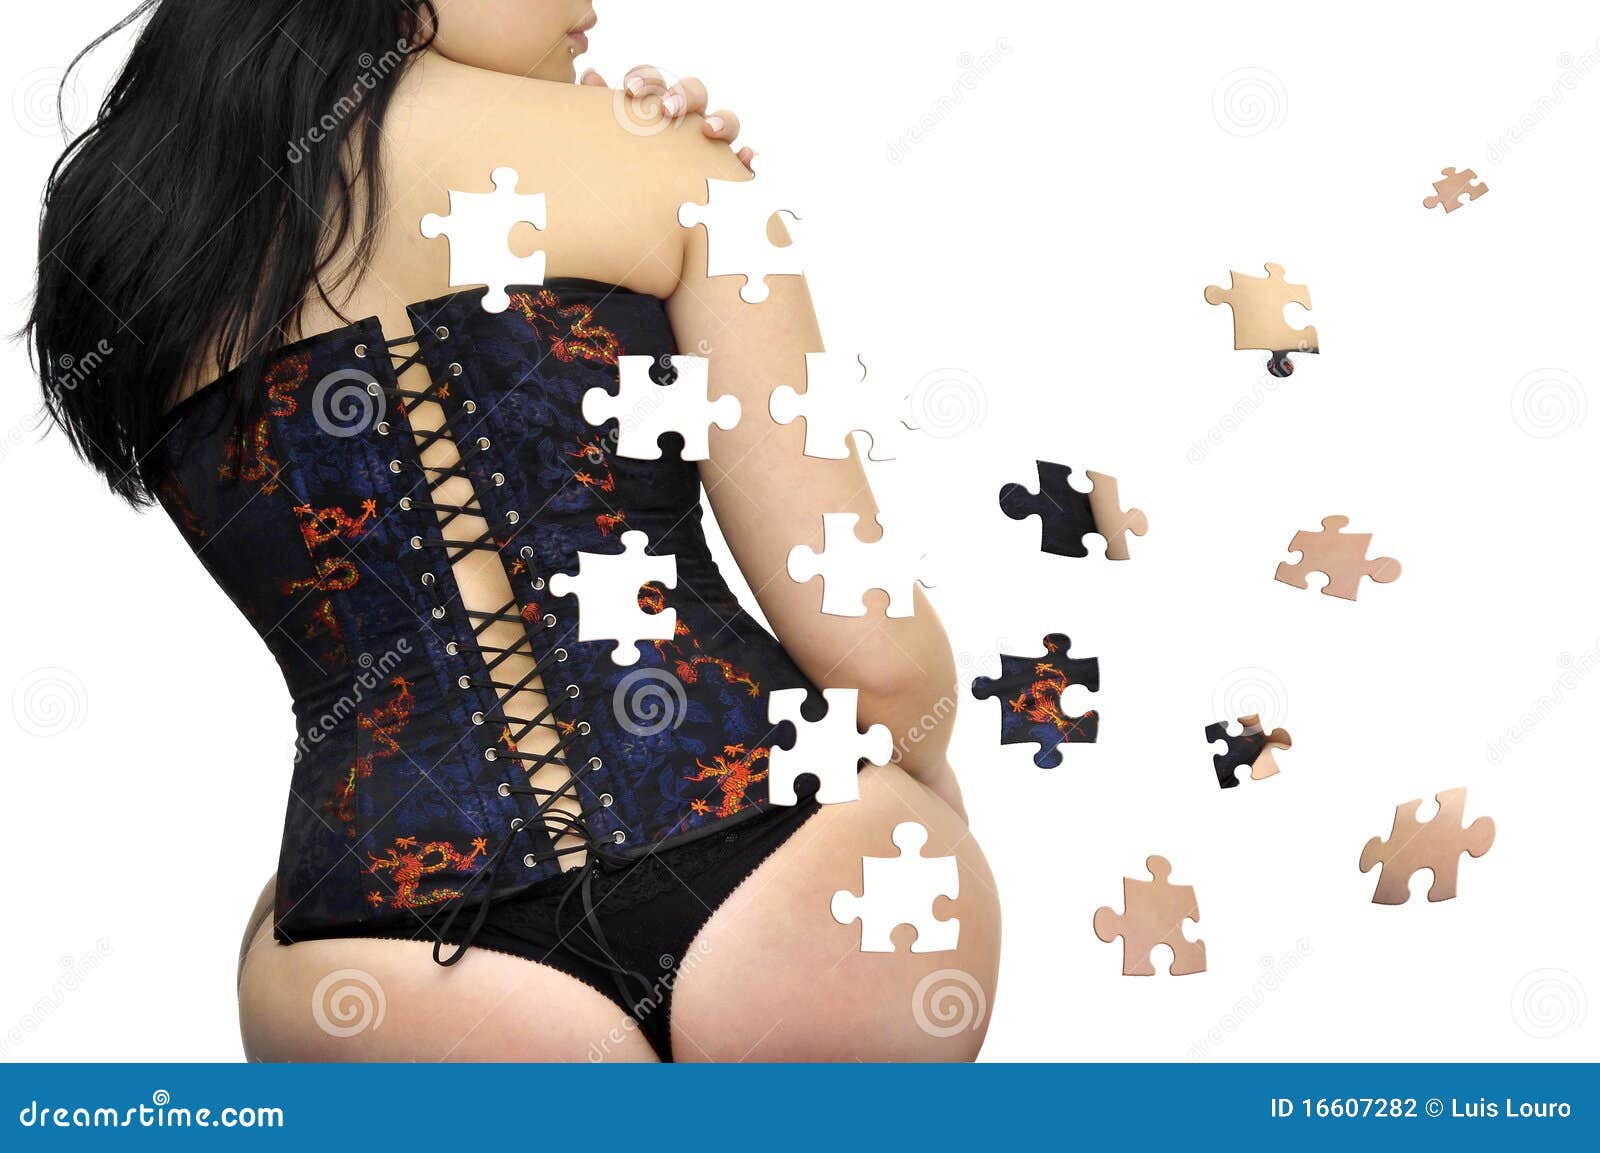 [Jeu] Suite d'images !  - Page 32 Puzzle-sexy-de-fille-16607282